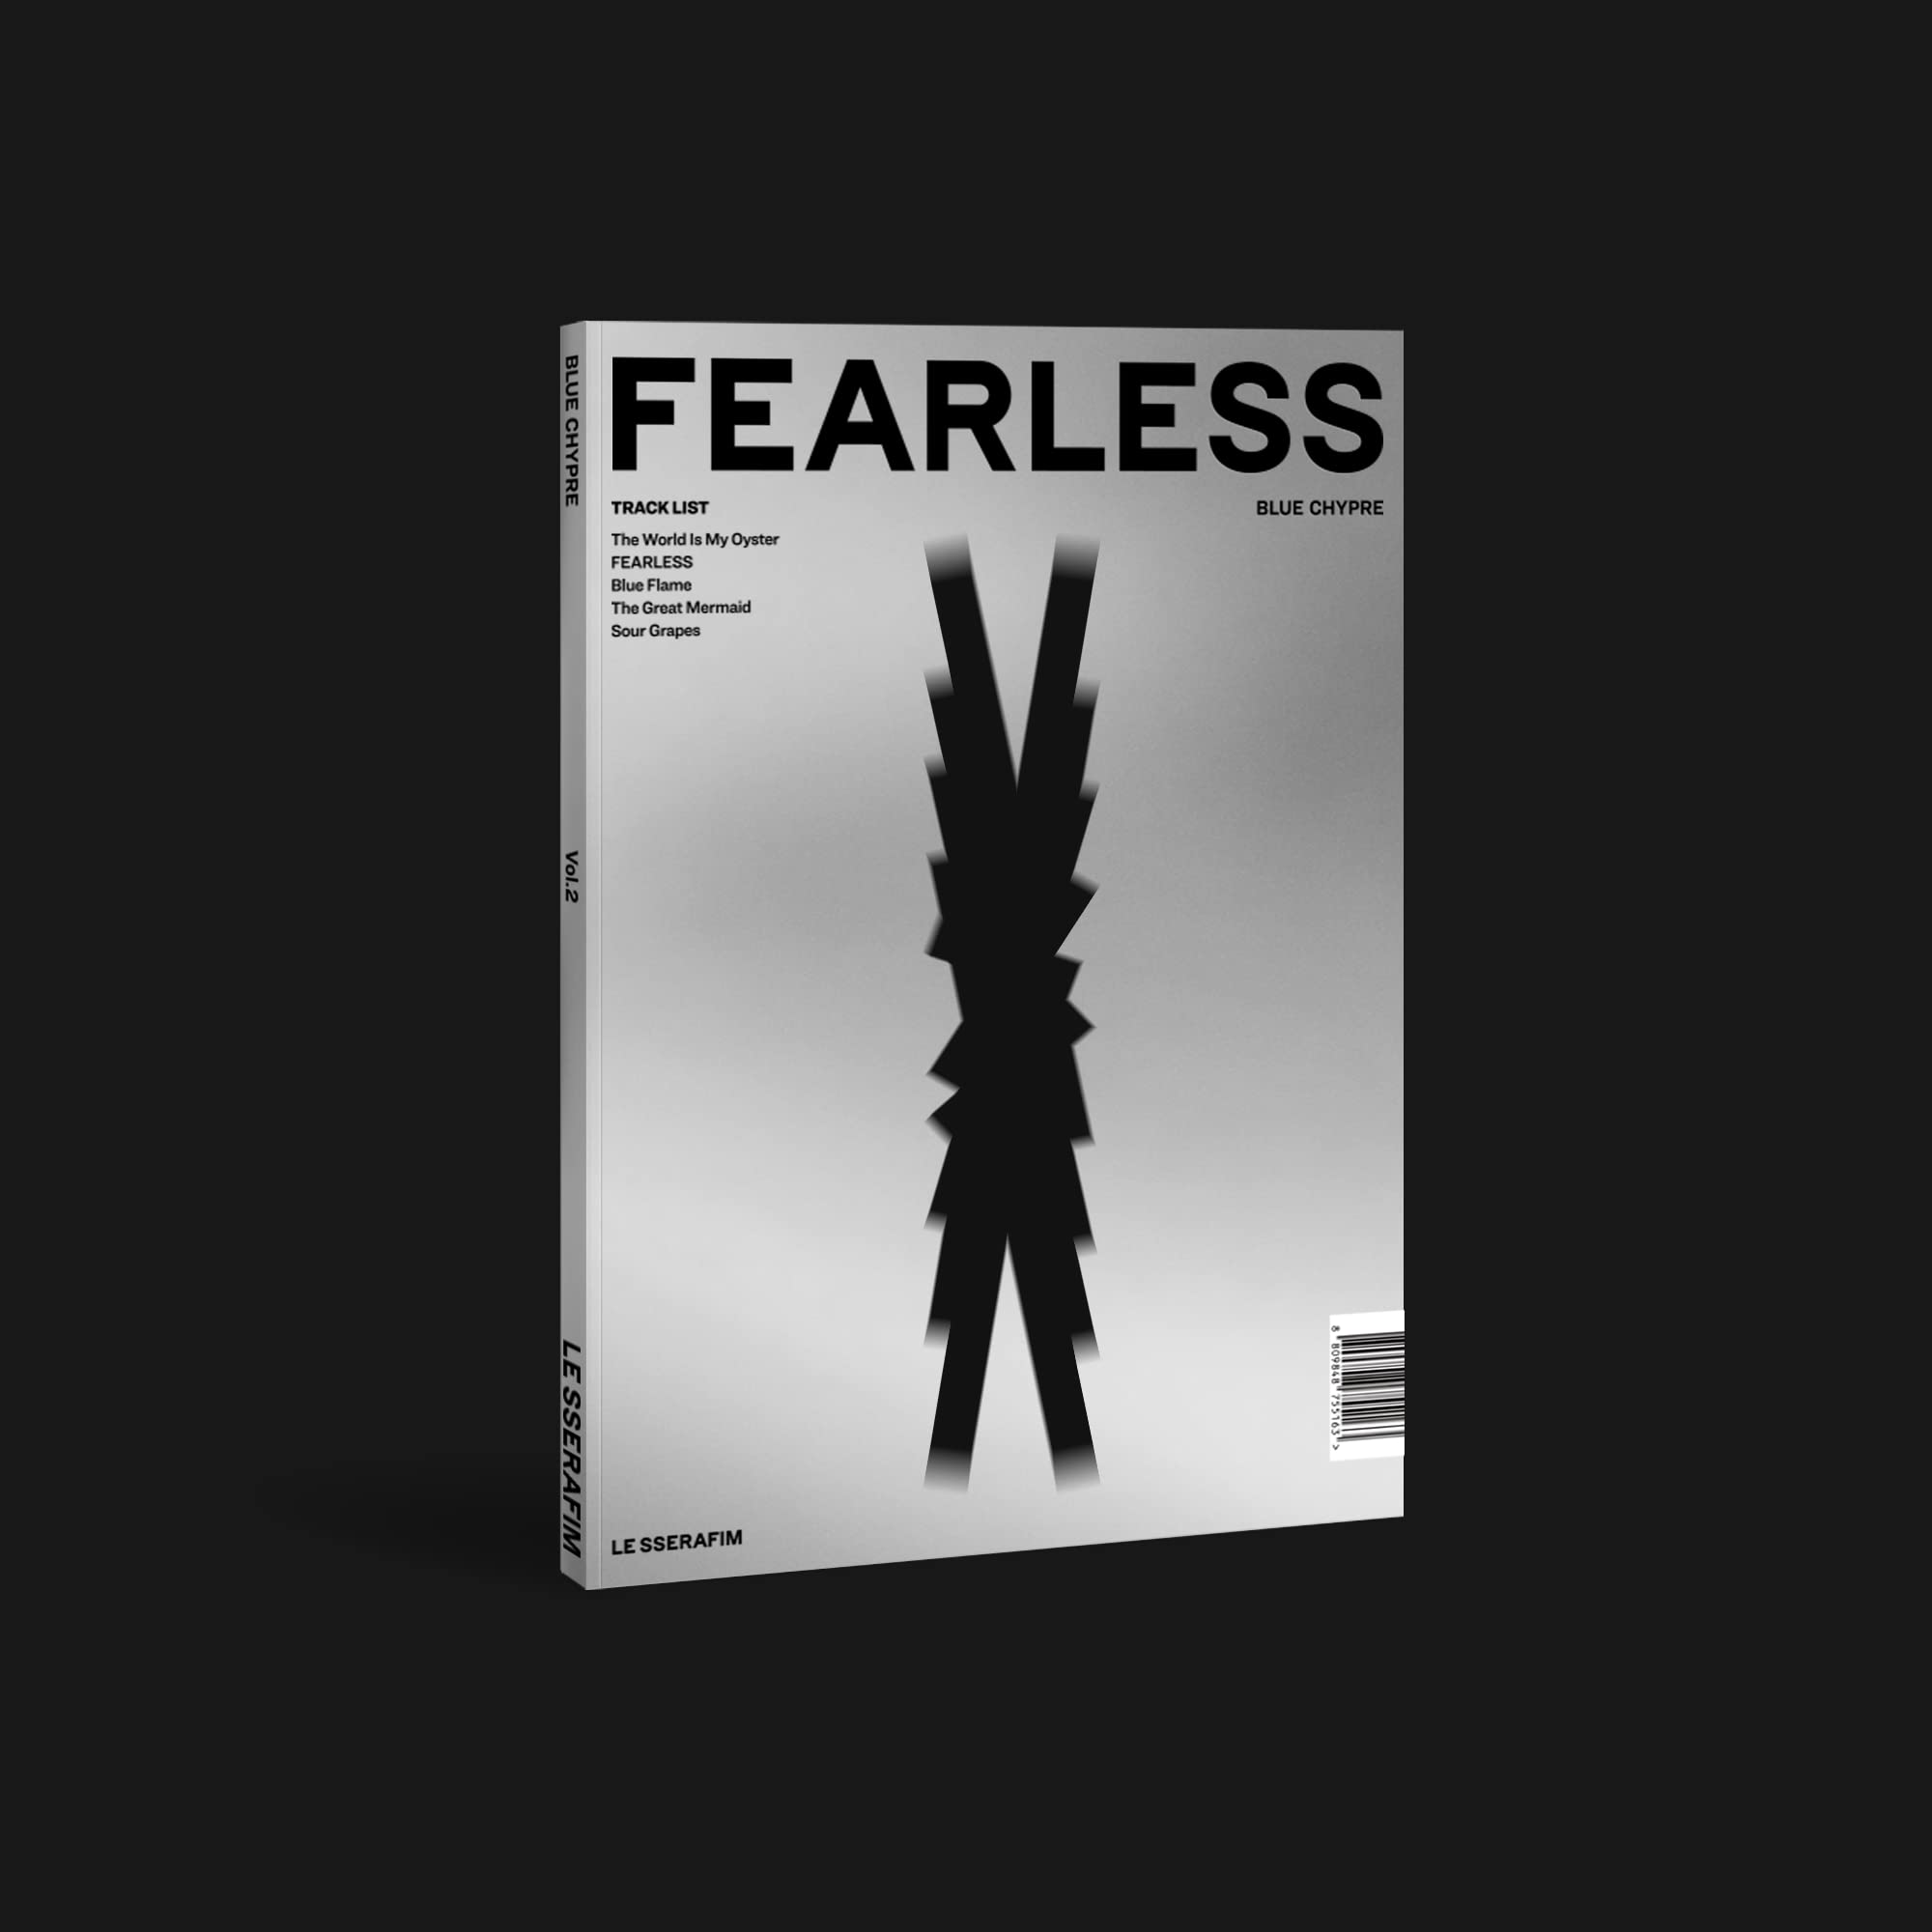 Audio Cd Le Sserafim - 1St Mini Album 'Fearless' NUOVO SIGILLATO, EDIZIONE DEL 05/01/2022 SUBITO DISPONIBILE